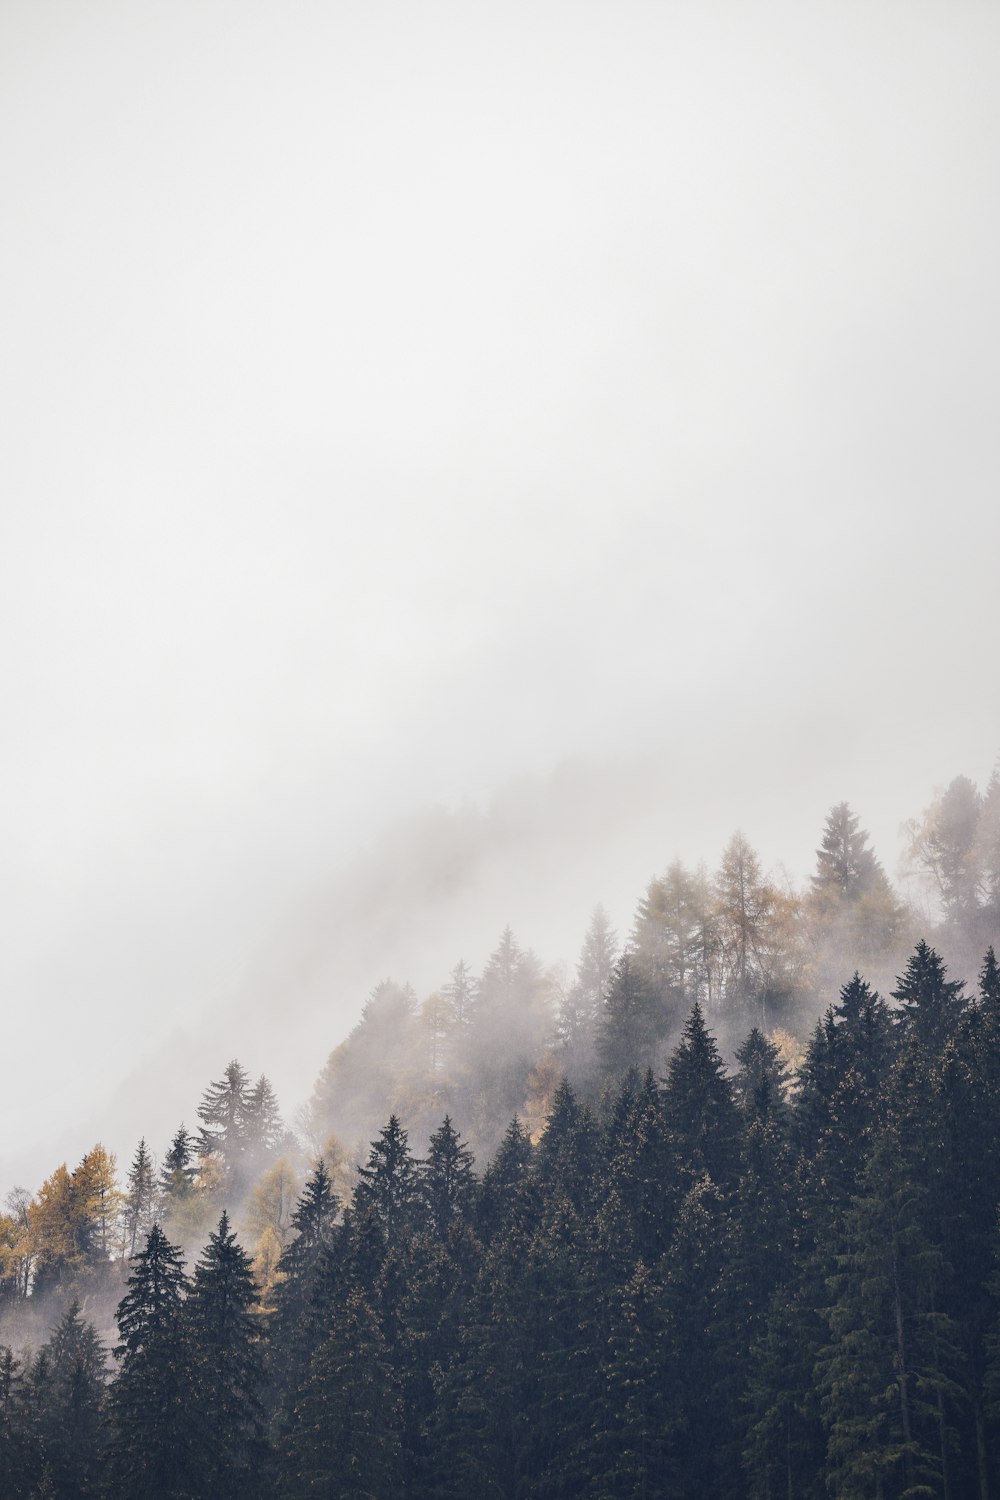 montagna con alberi ad alto fusto coperti di nebbie